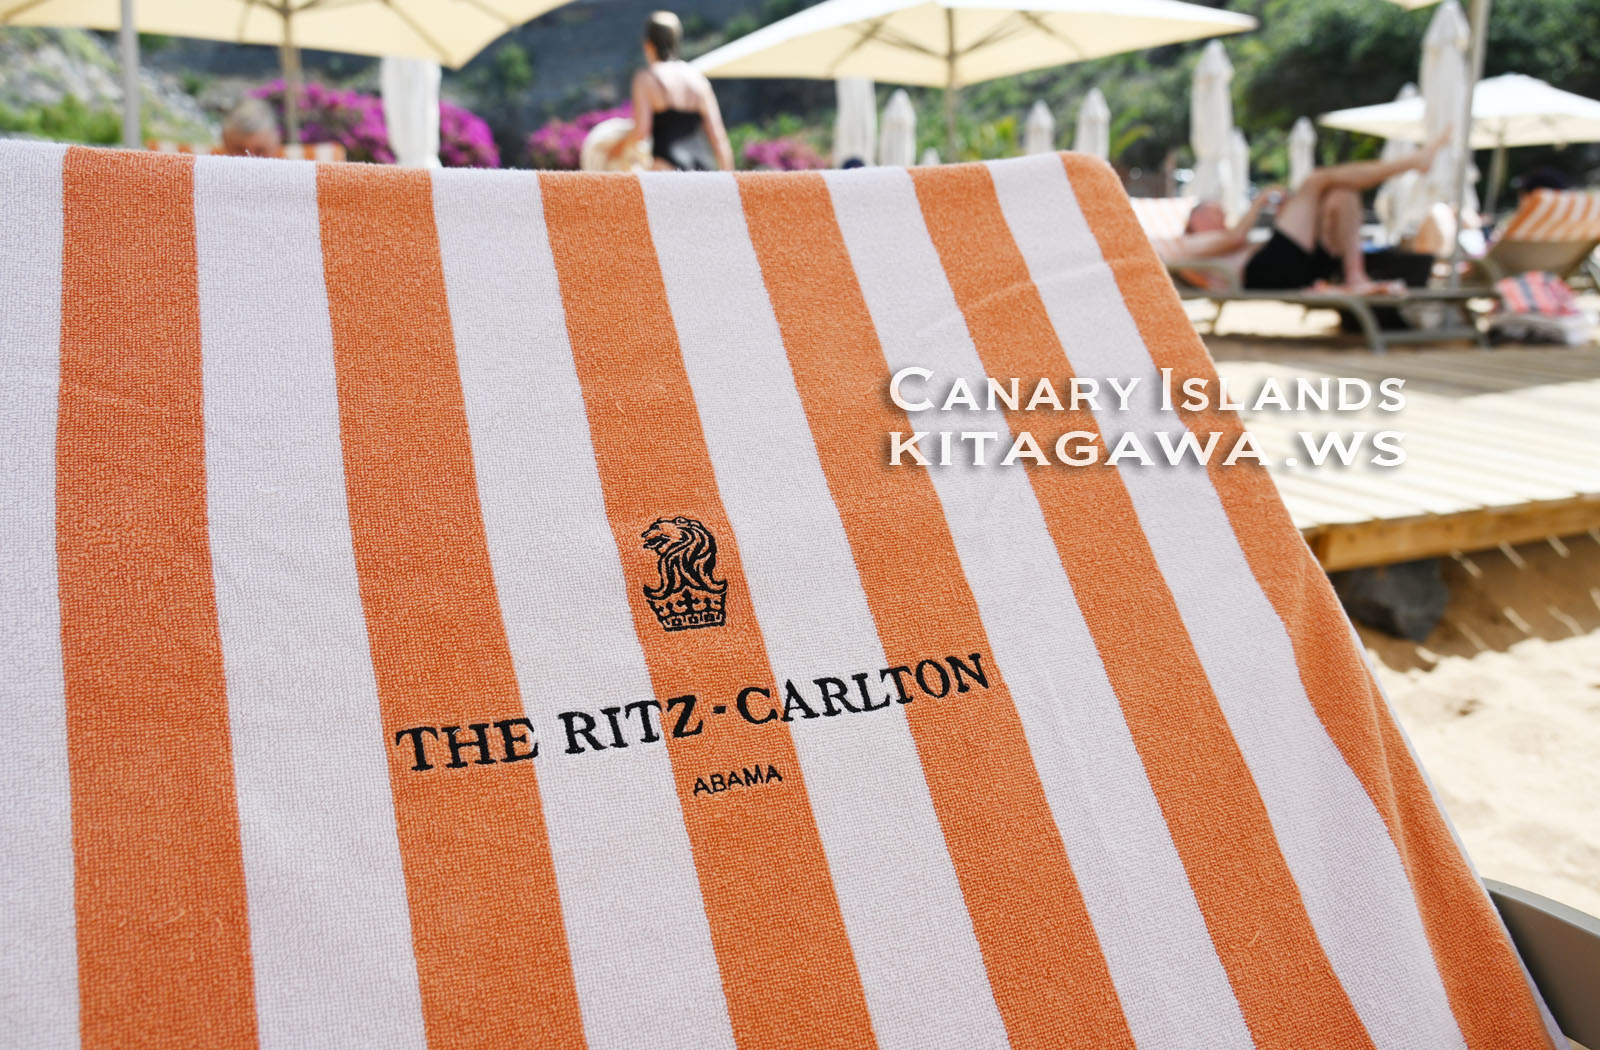 The Ritz-Carlton Abama